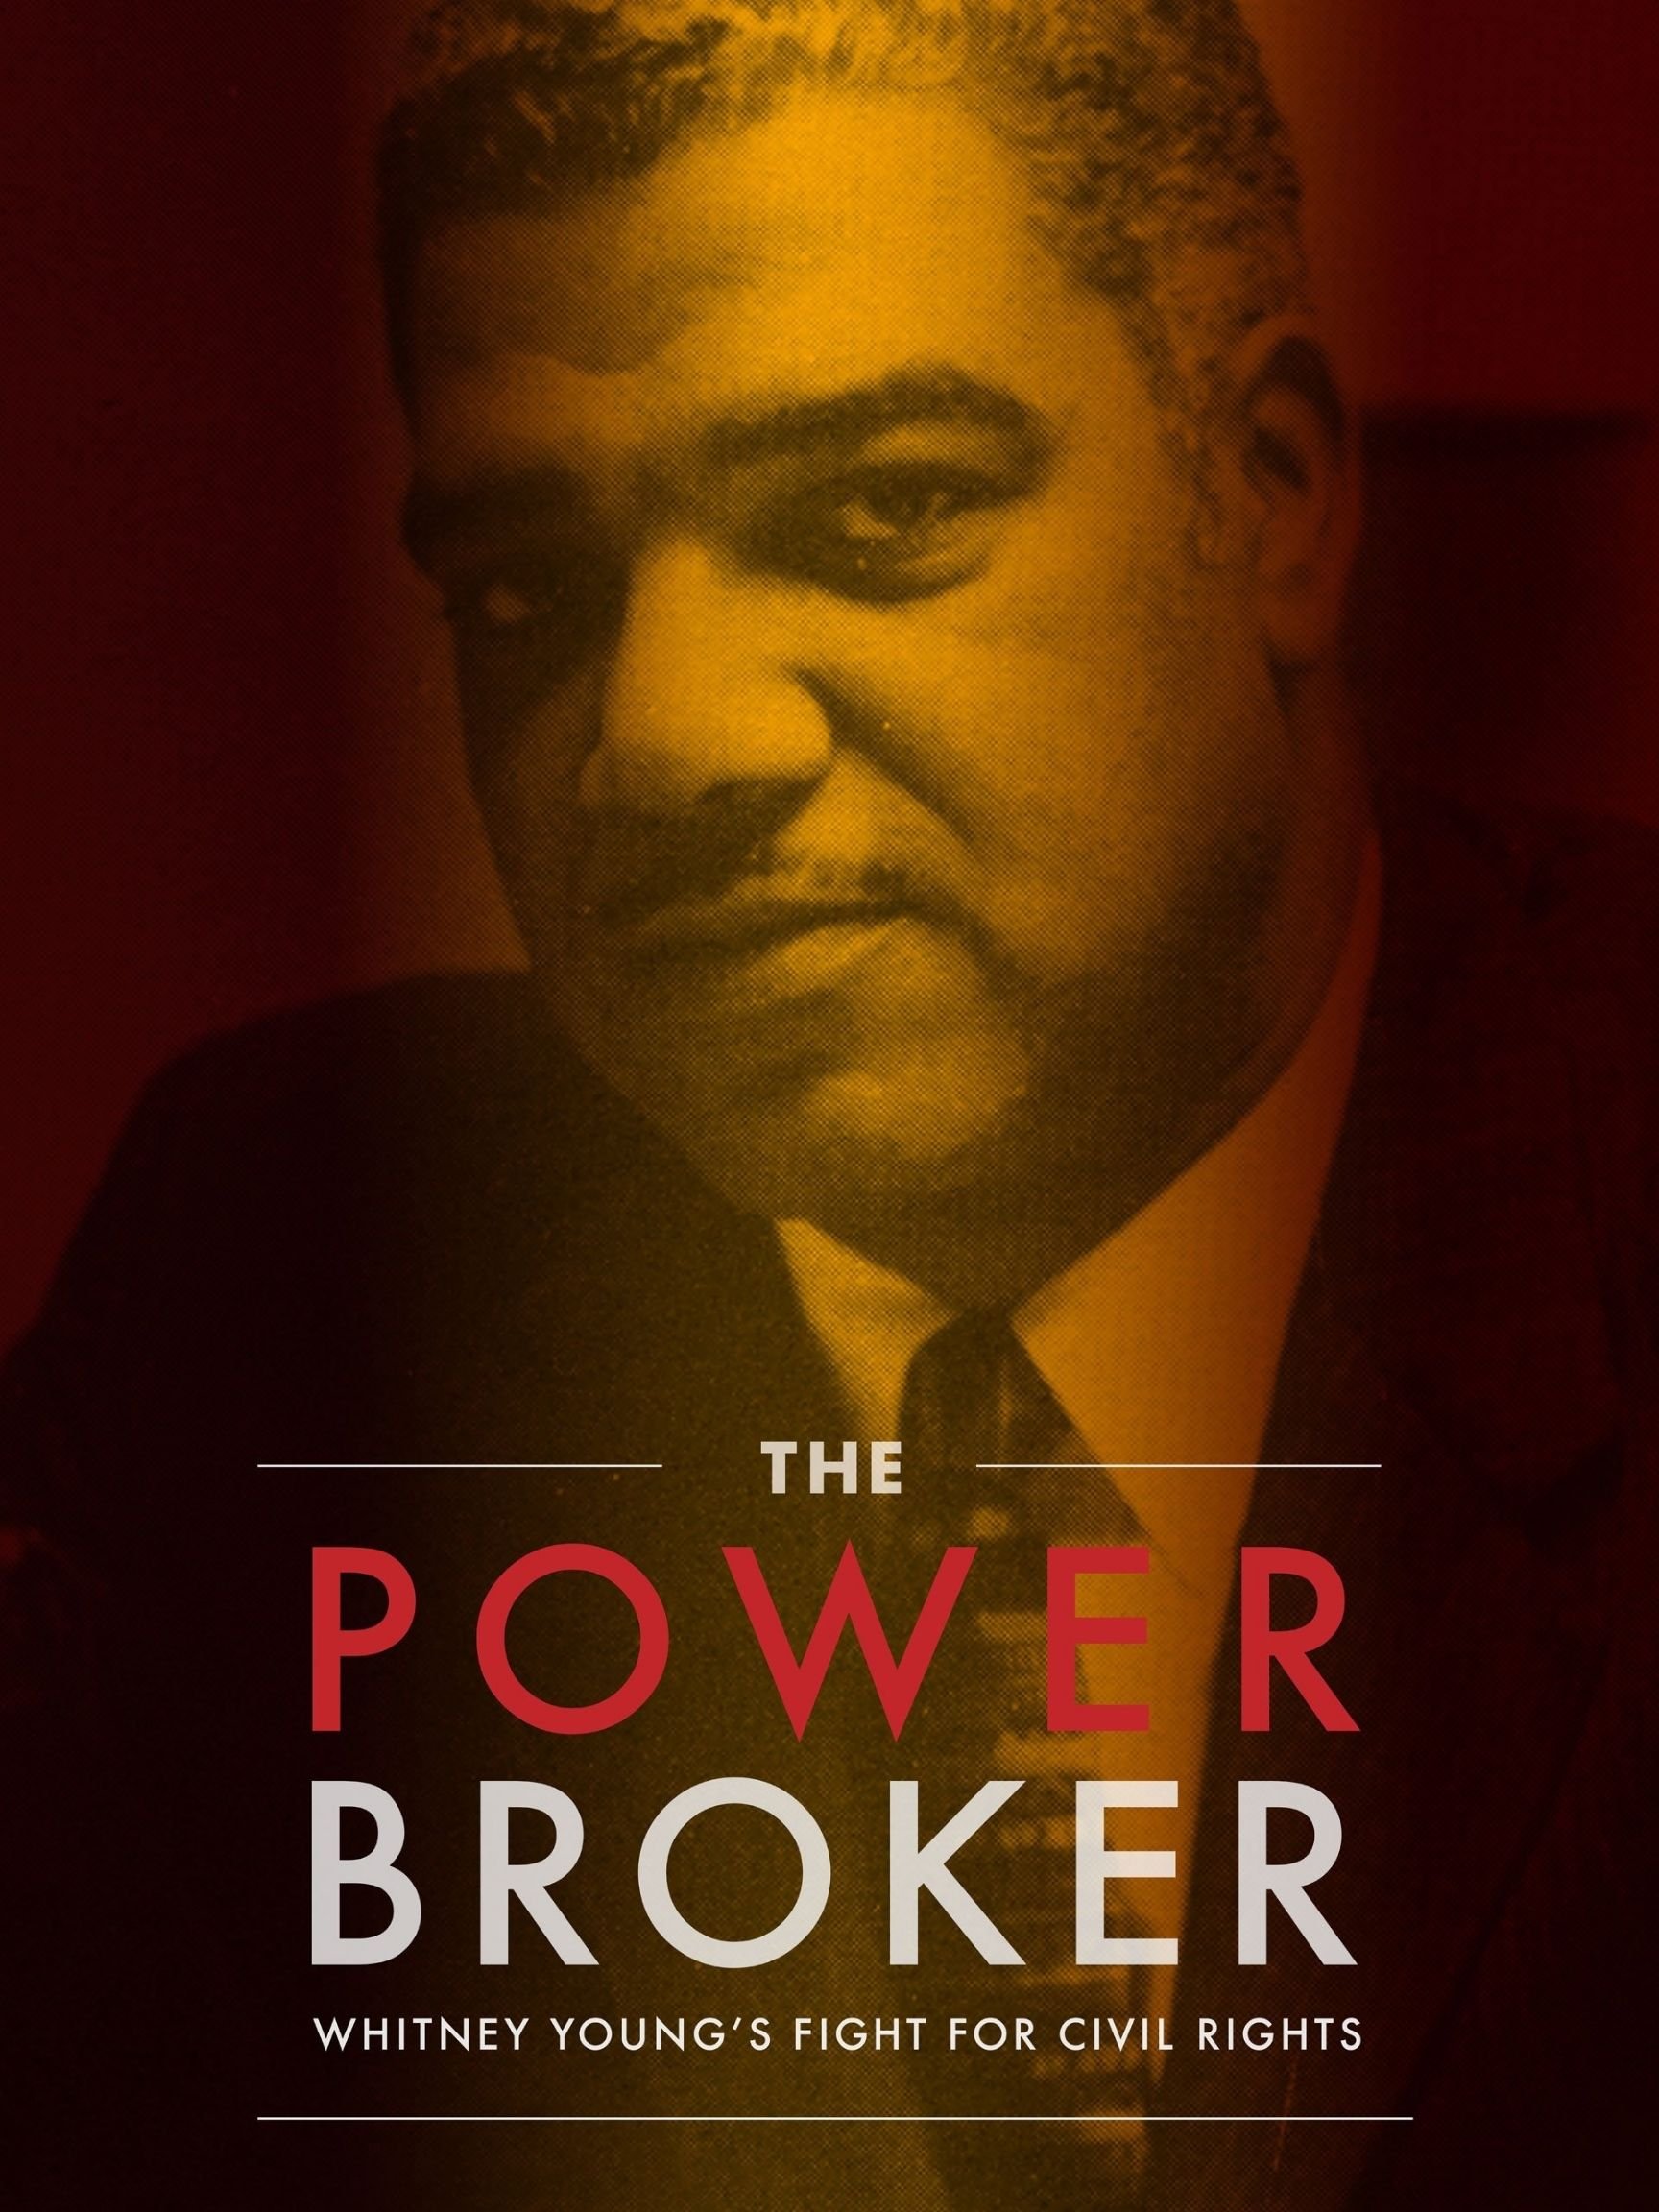 The Powerbroker Poster - 3x4